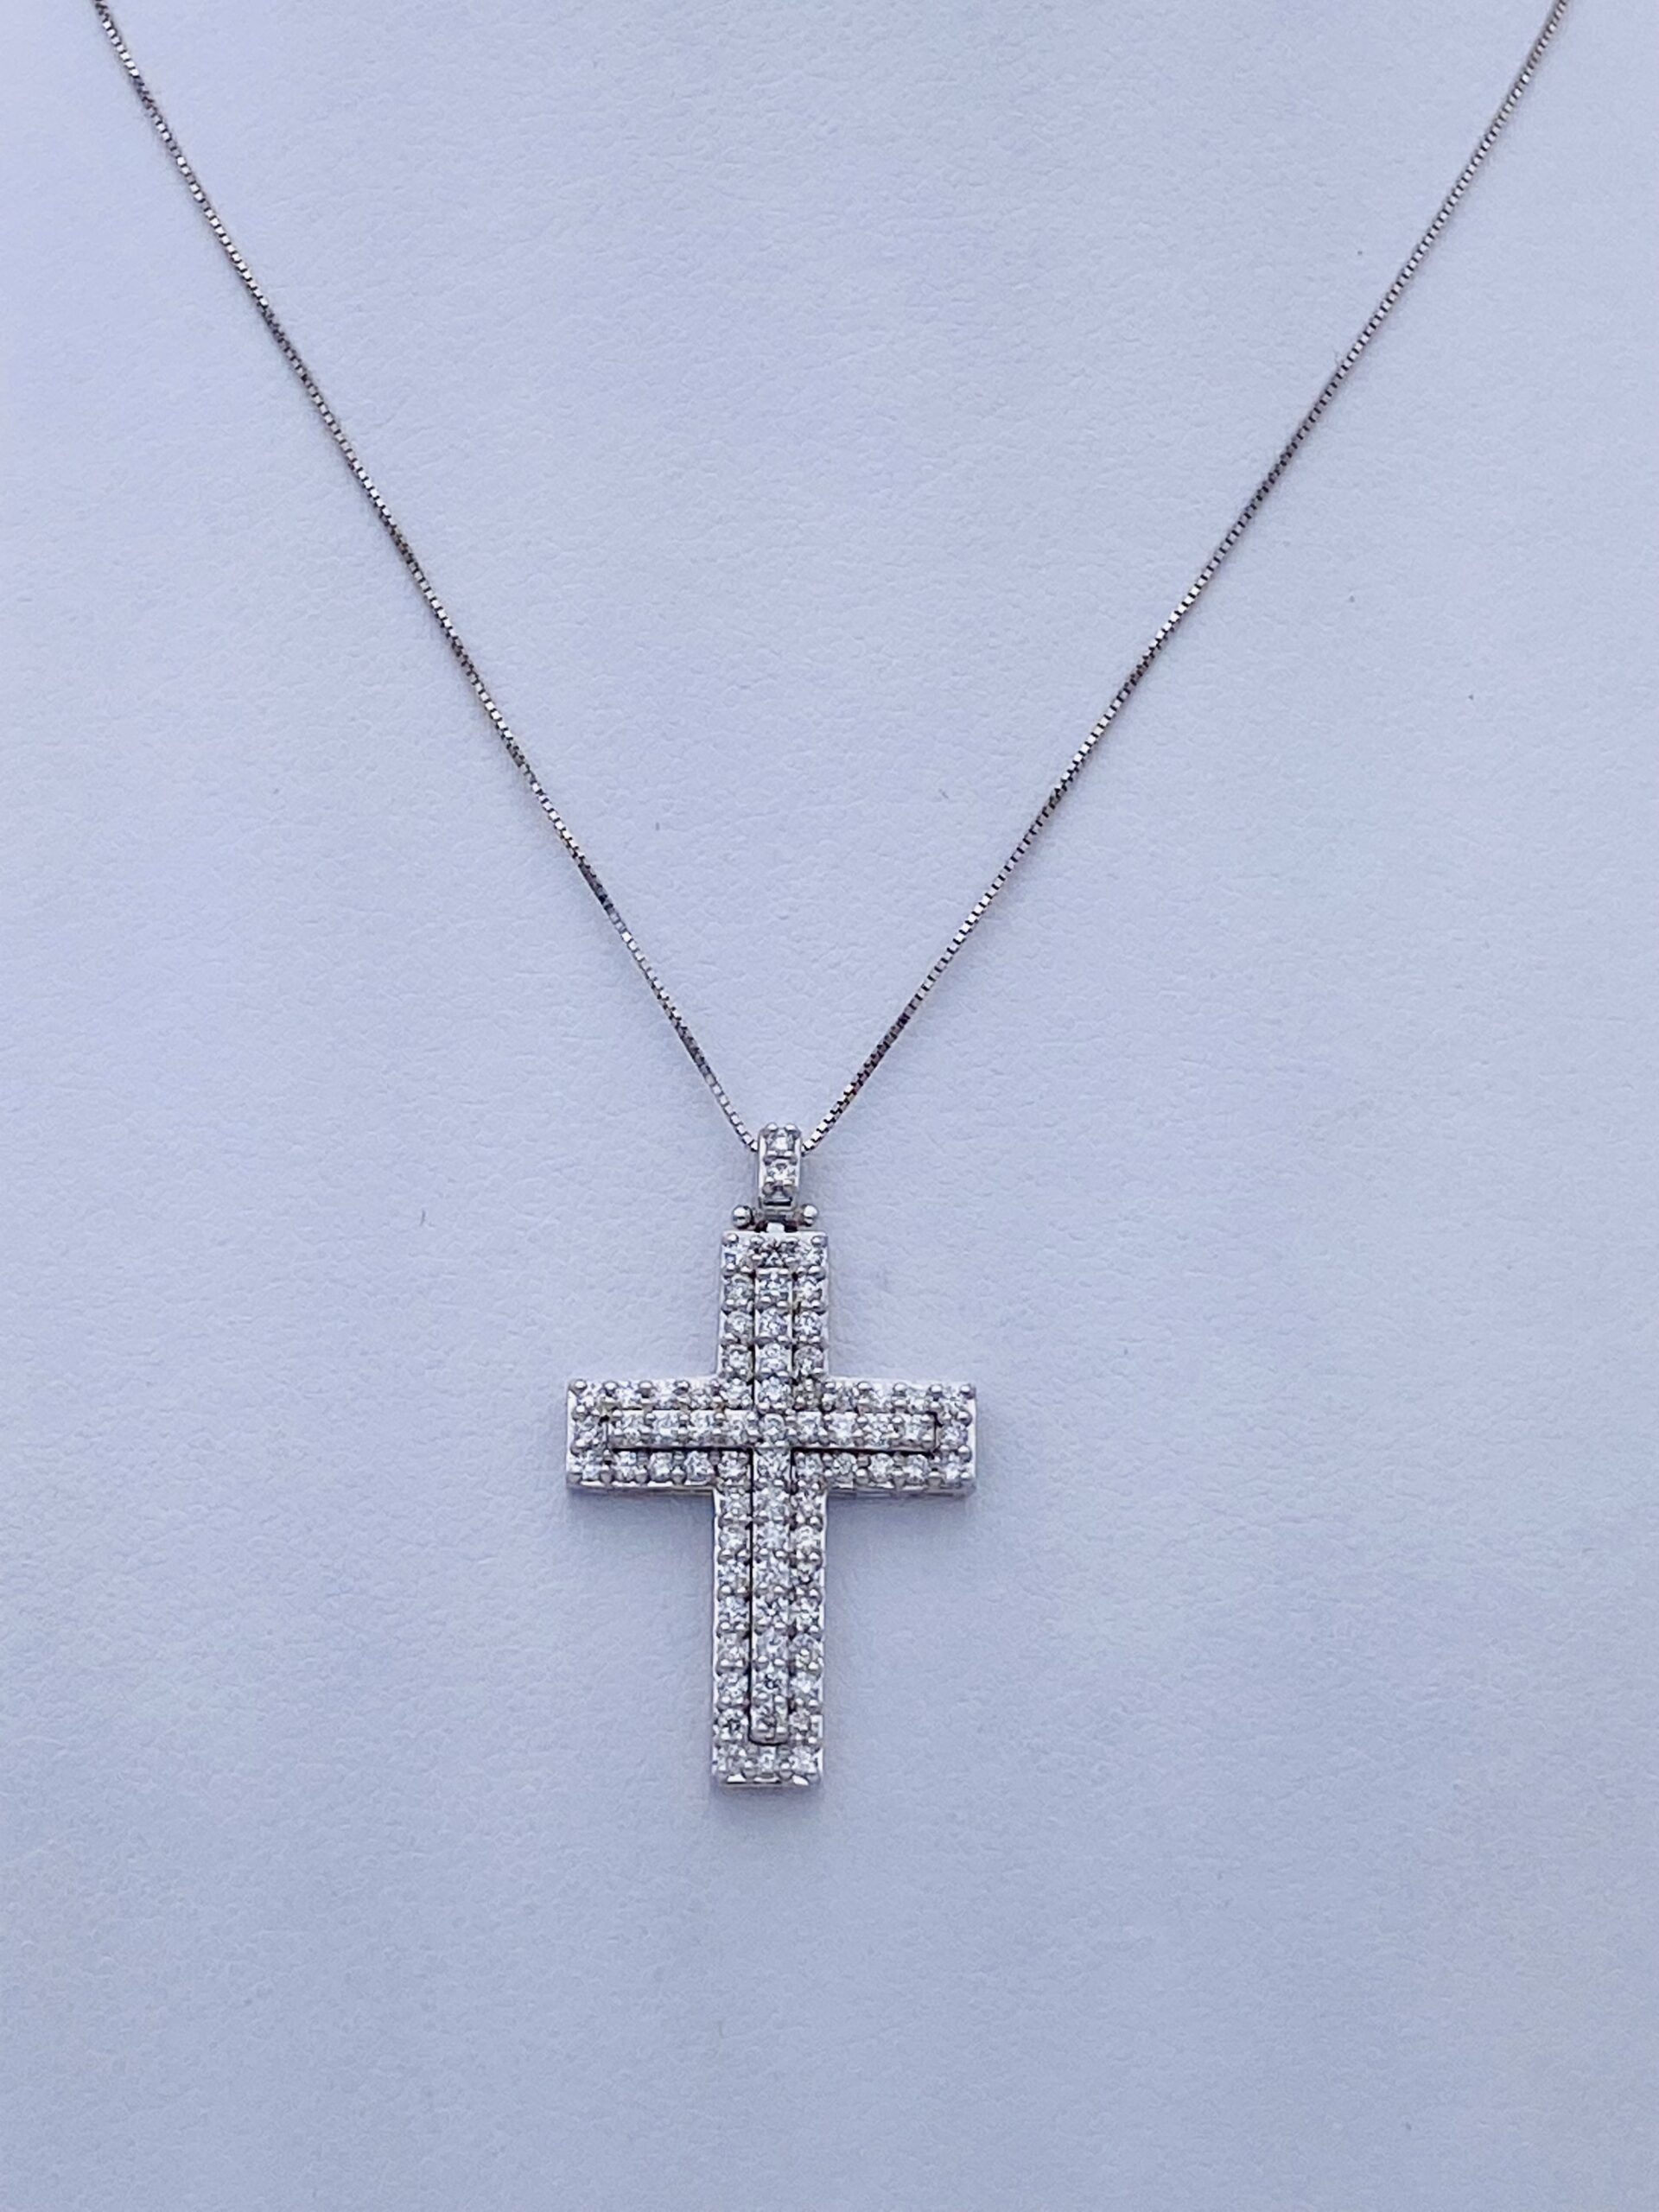 White gold 750% cross pendant and diamonds Art. GR291